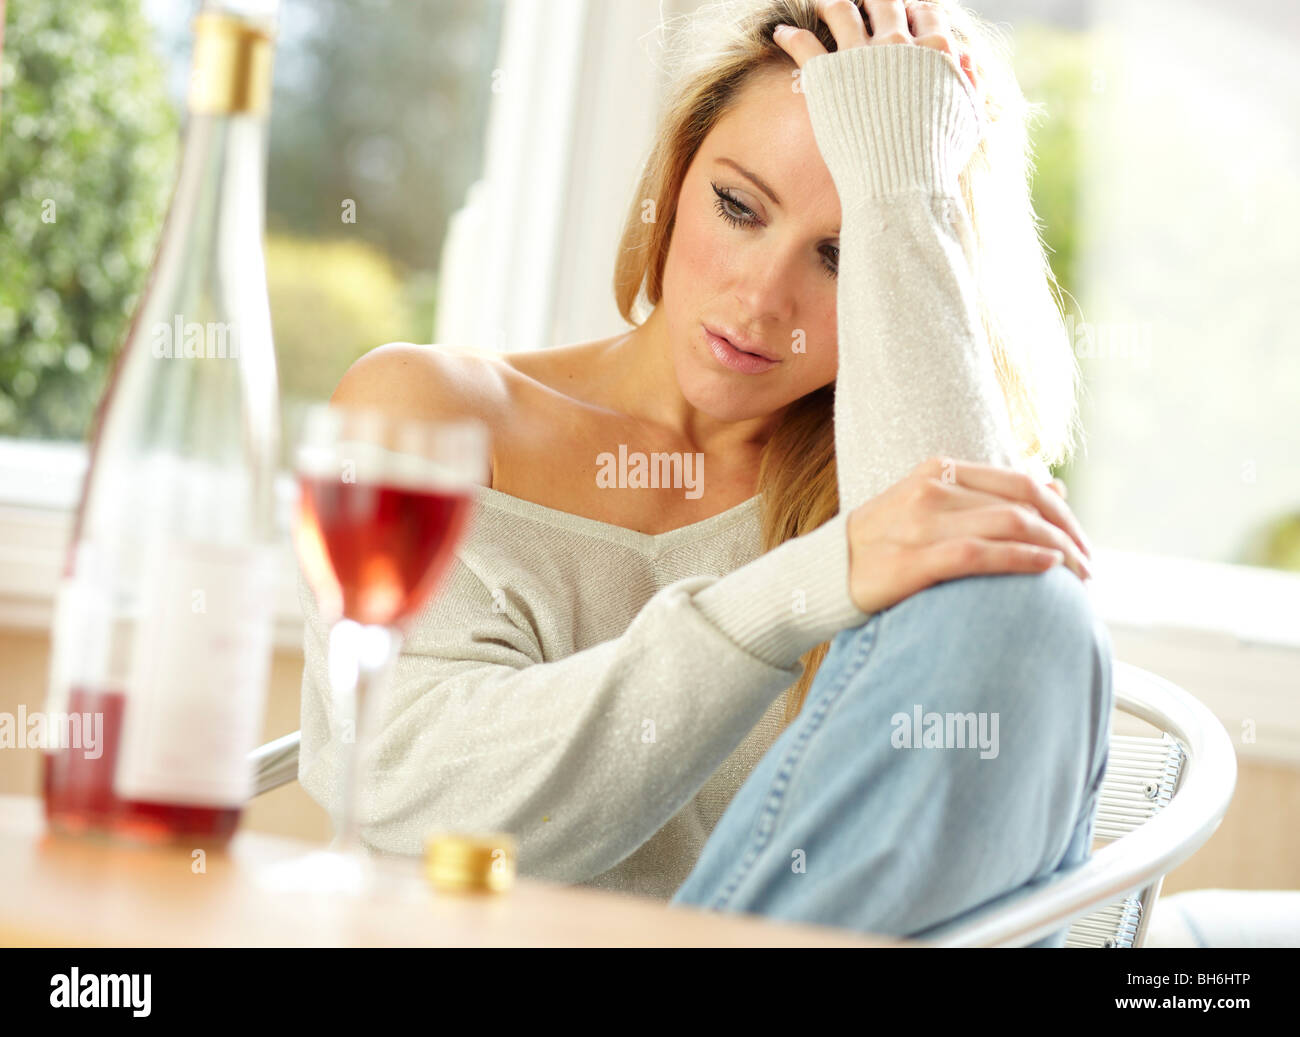 Frau trinkt Wein Stockfoto